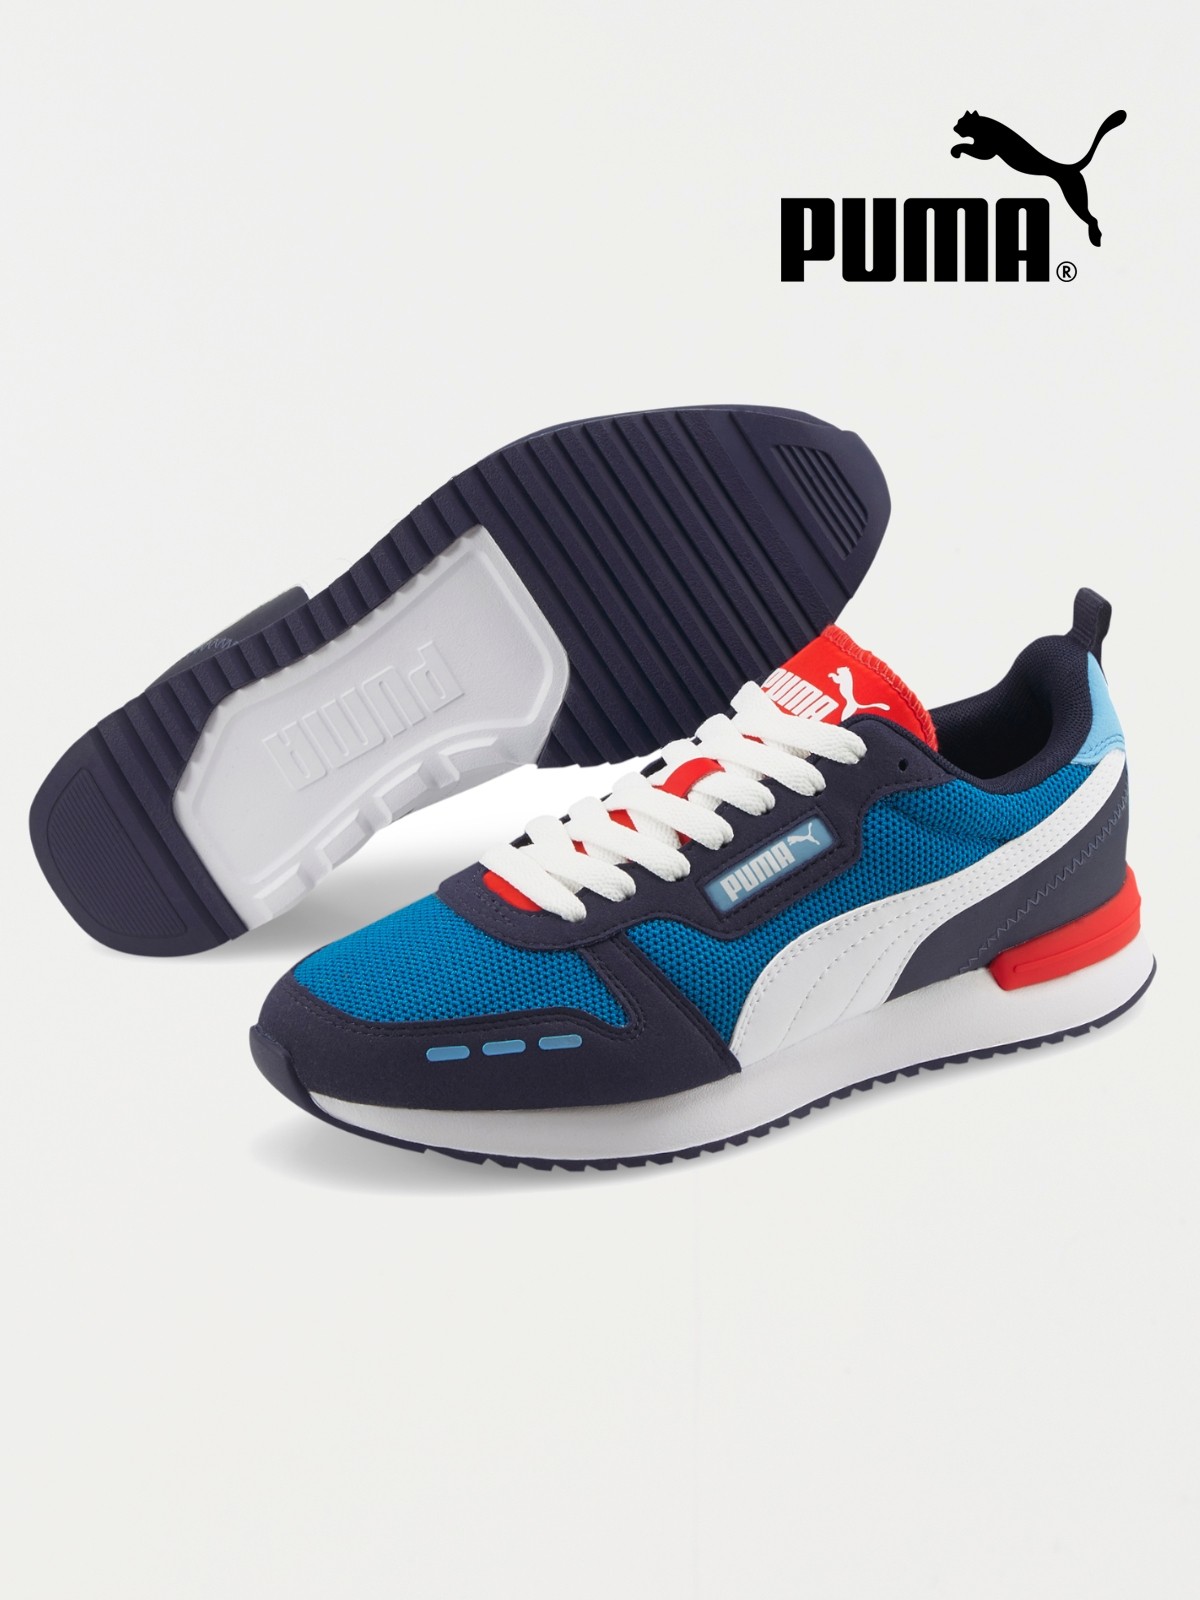 Cette paire de baskets Puma iconique affiche 45% de remise grâce à cette  astuce - Le Parisien